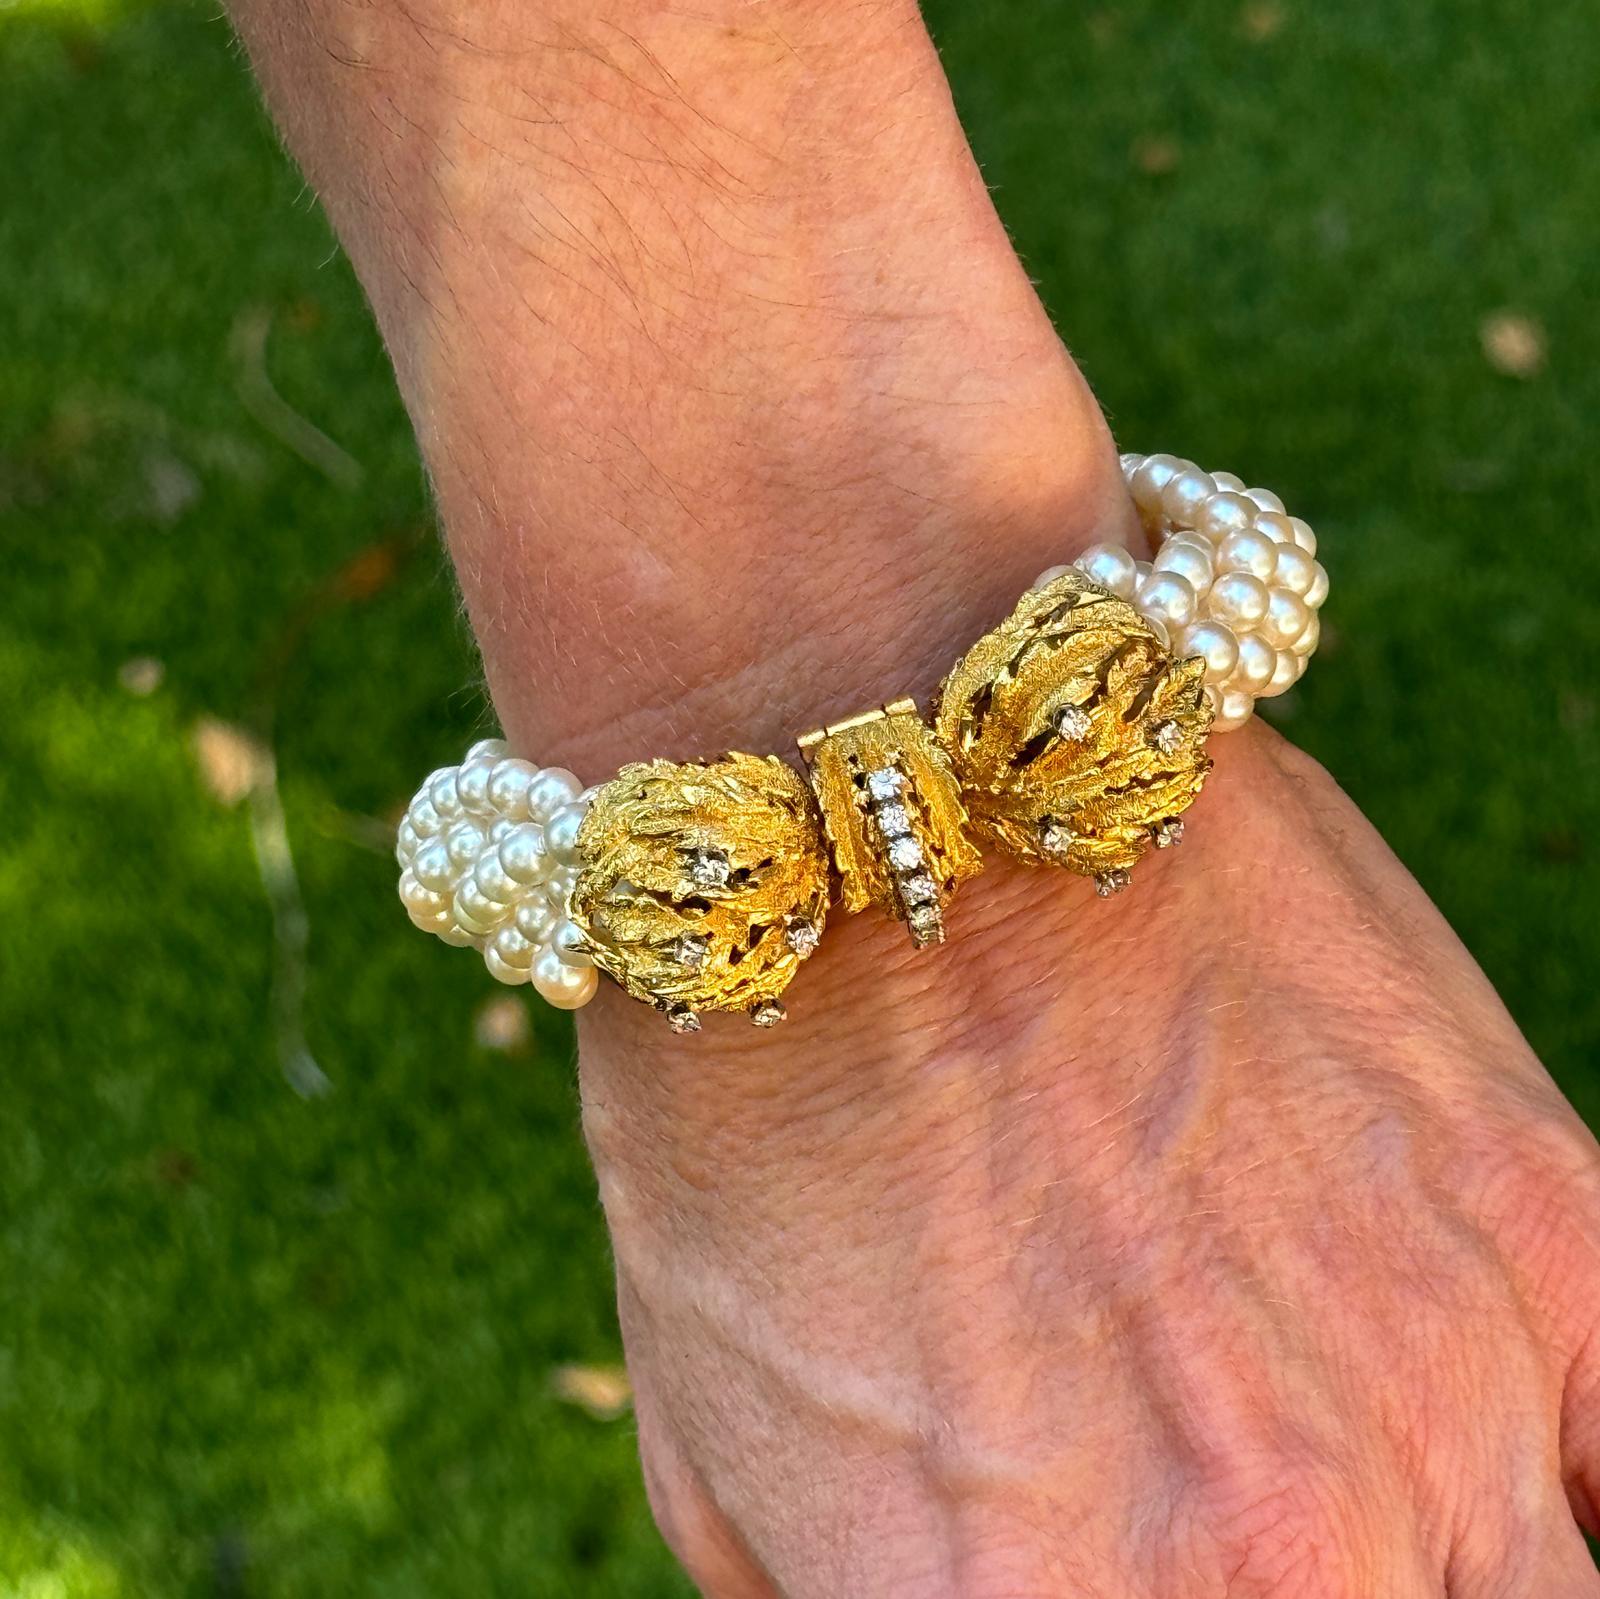 Dieses luxuriöse, mehrreihige Perlenarmband strahlt Raffinesse und Eleganz aus. Es besteht aus mehreren Strängen glänzender Perlen, die mit einer atemberaubenden Schließe aus 18 Karat Gelbgold verschlossen werden, die mit 17 runden Diamanten im